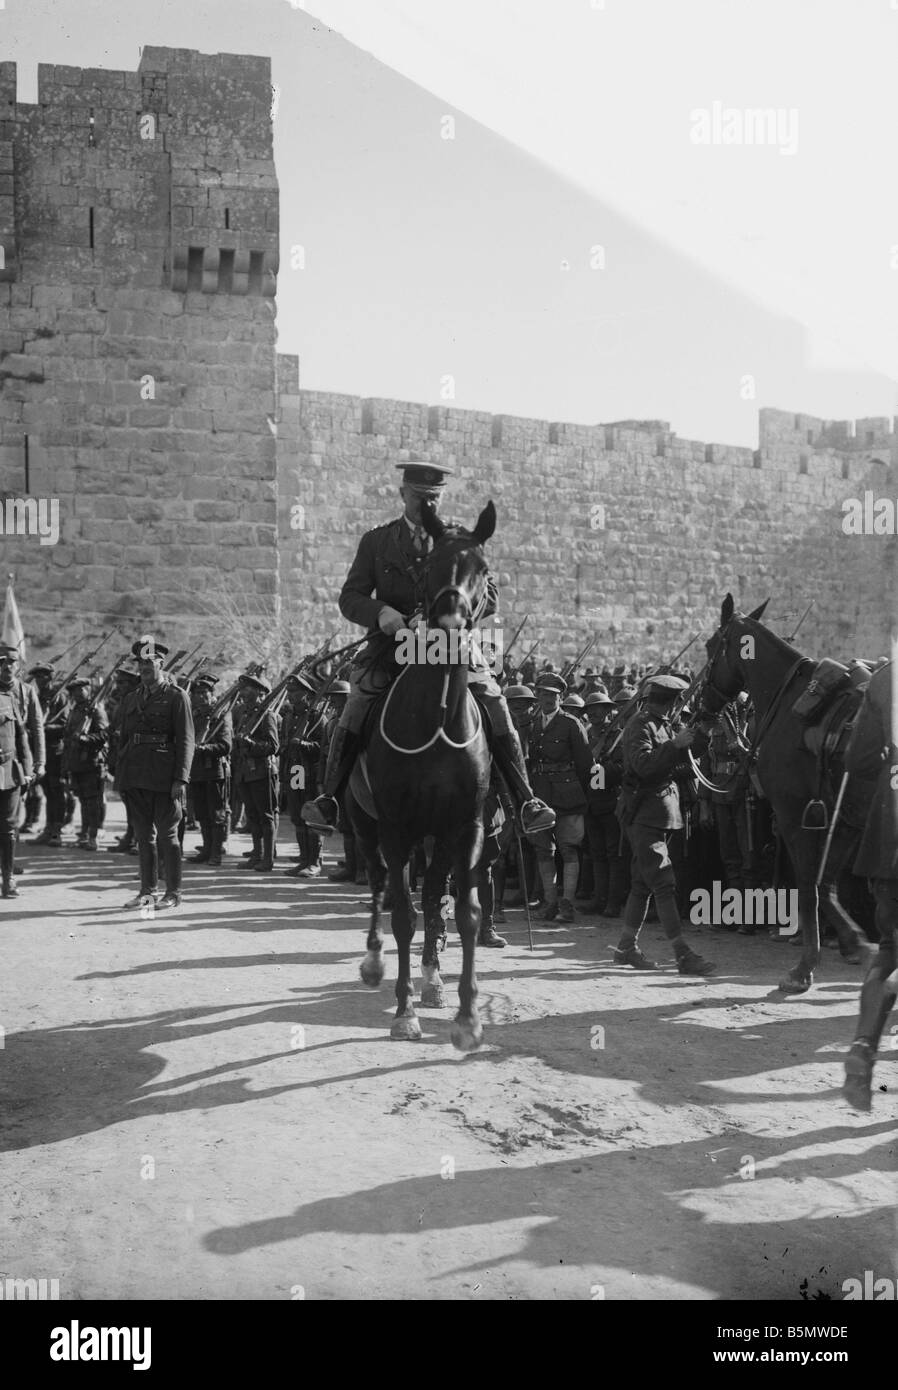 9IS 1917 12 11 A1 WW ich erfassen von Jerusalem durch Großbritannien Weltkriegs türkische britische kämpft erfassen von Jerusalems durch britische Truppen Stockfoto